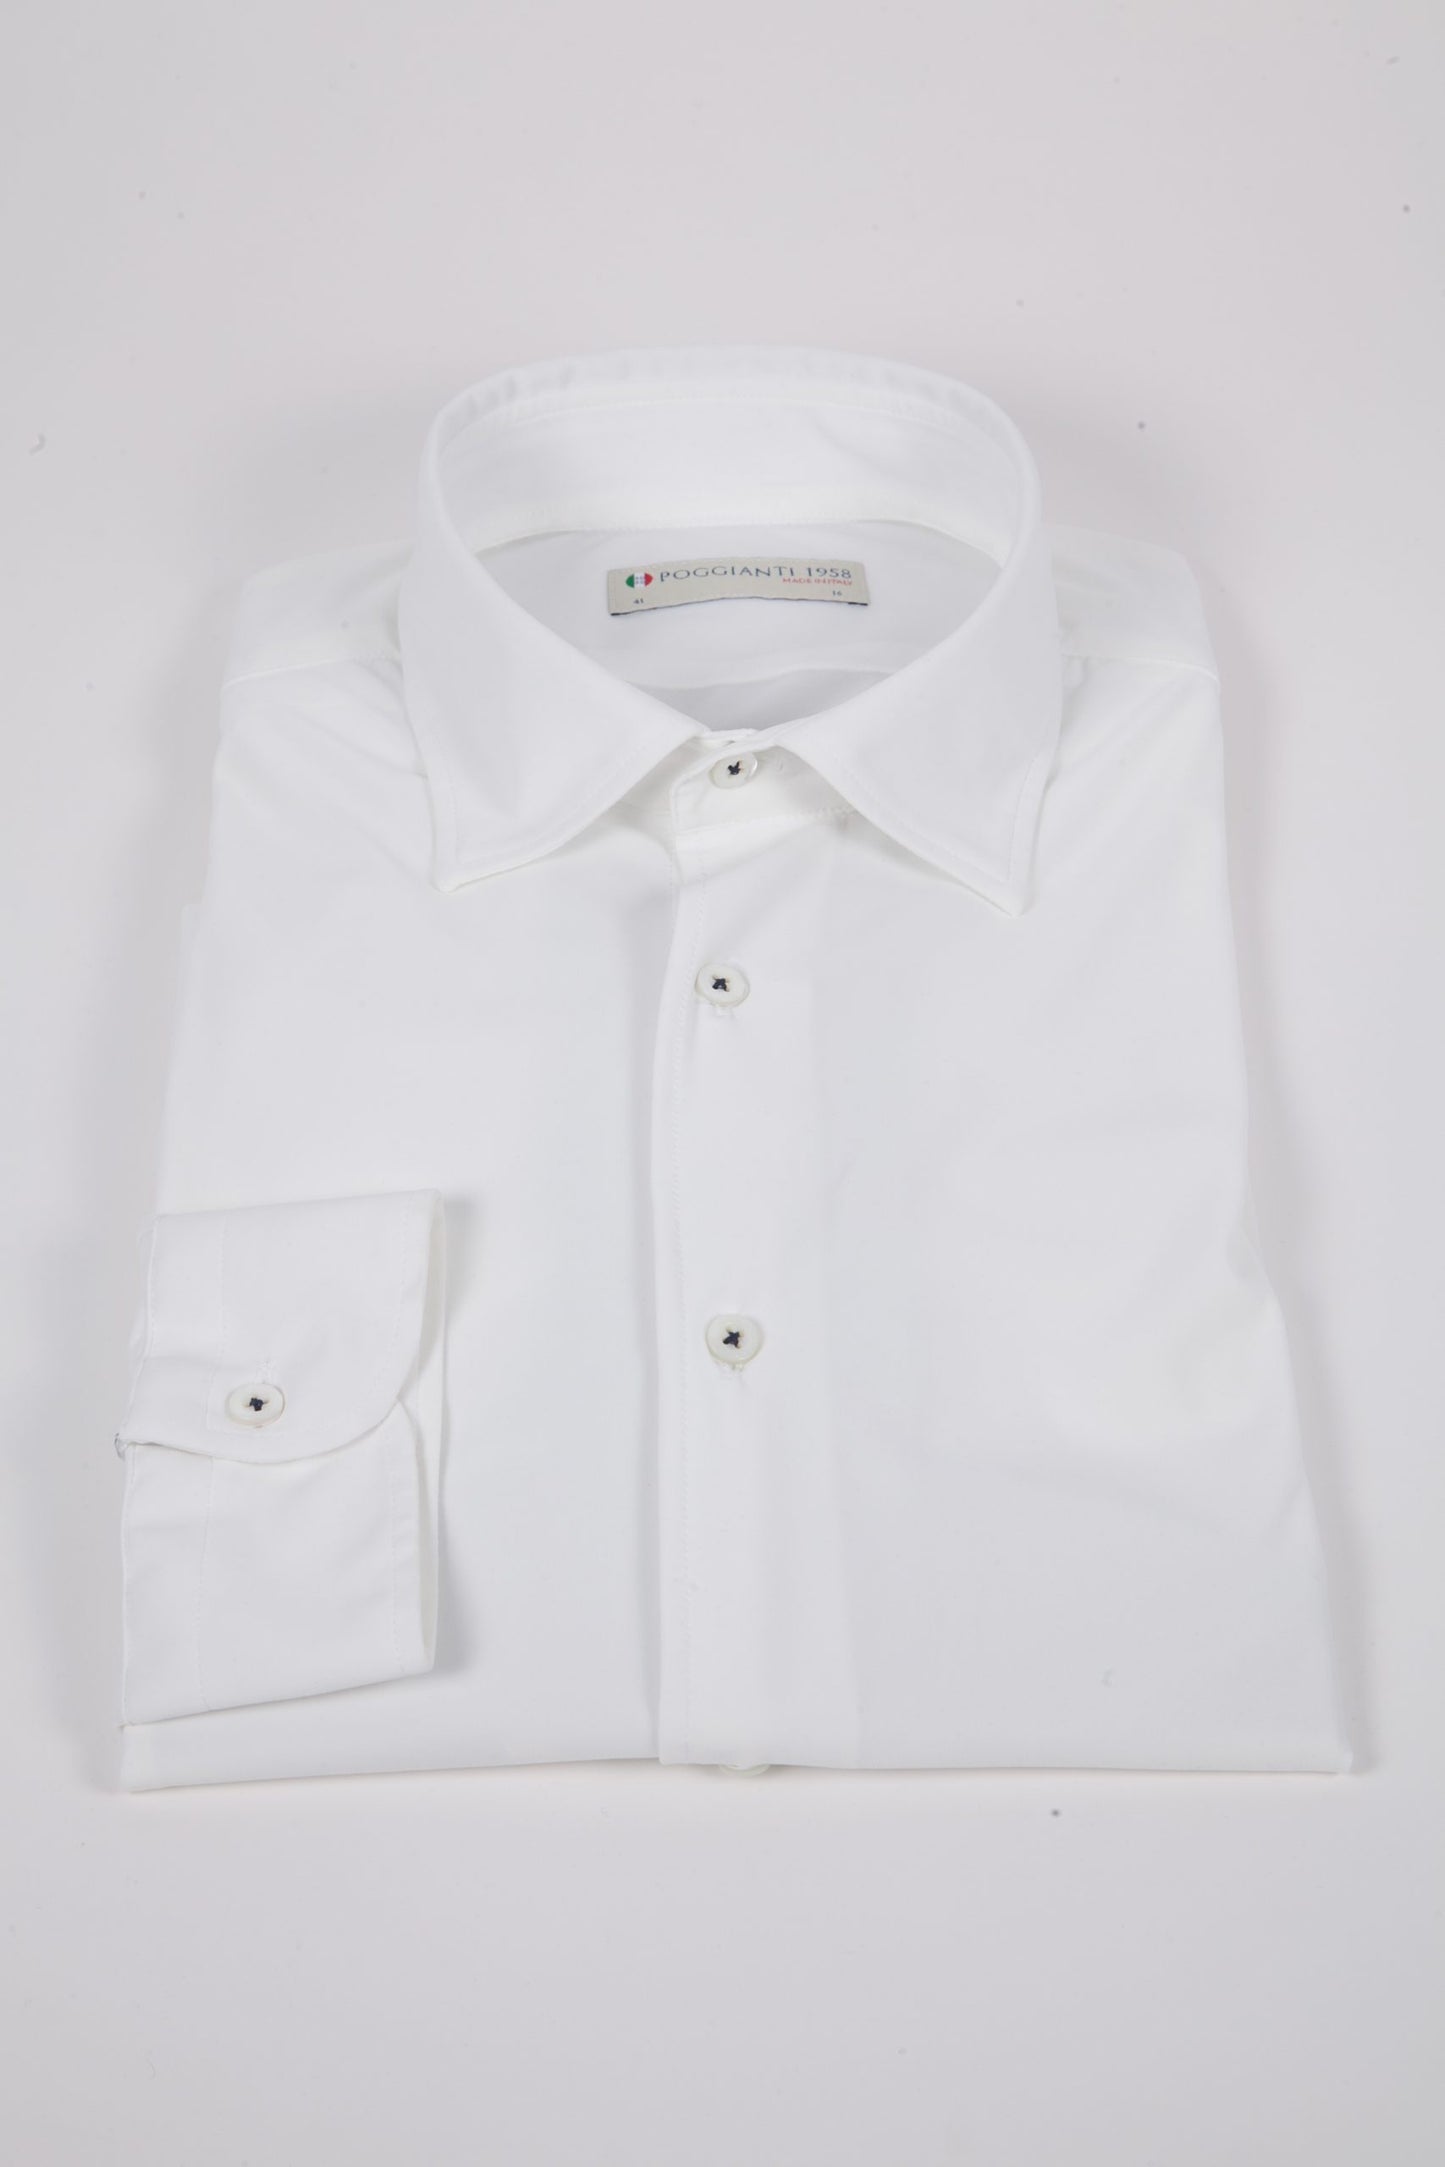 Poggianti 1958 - Shirt Active White